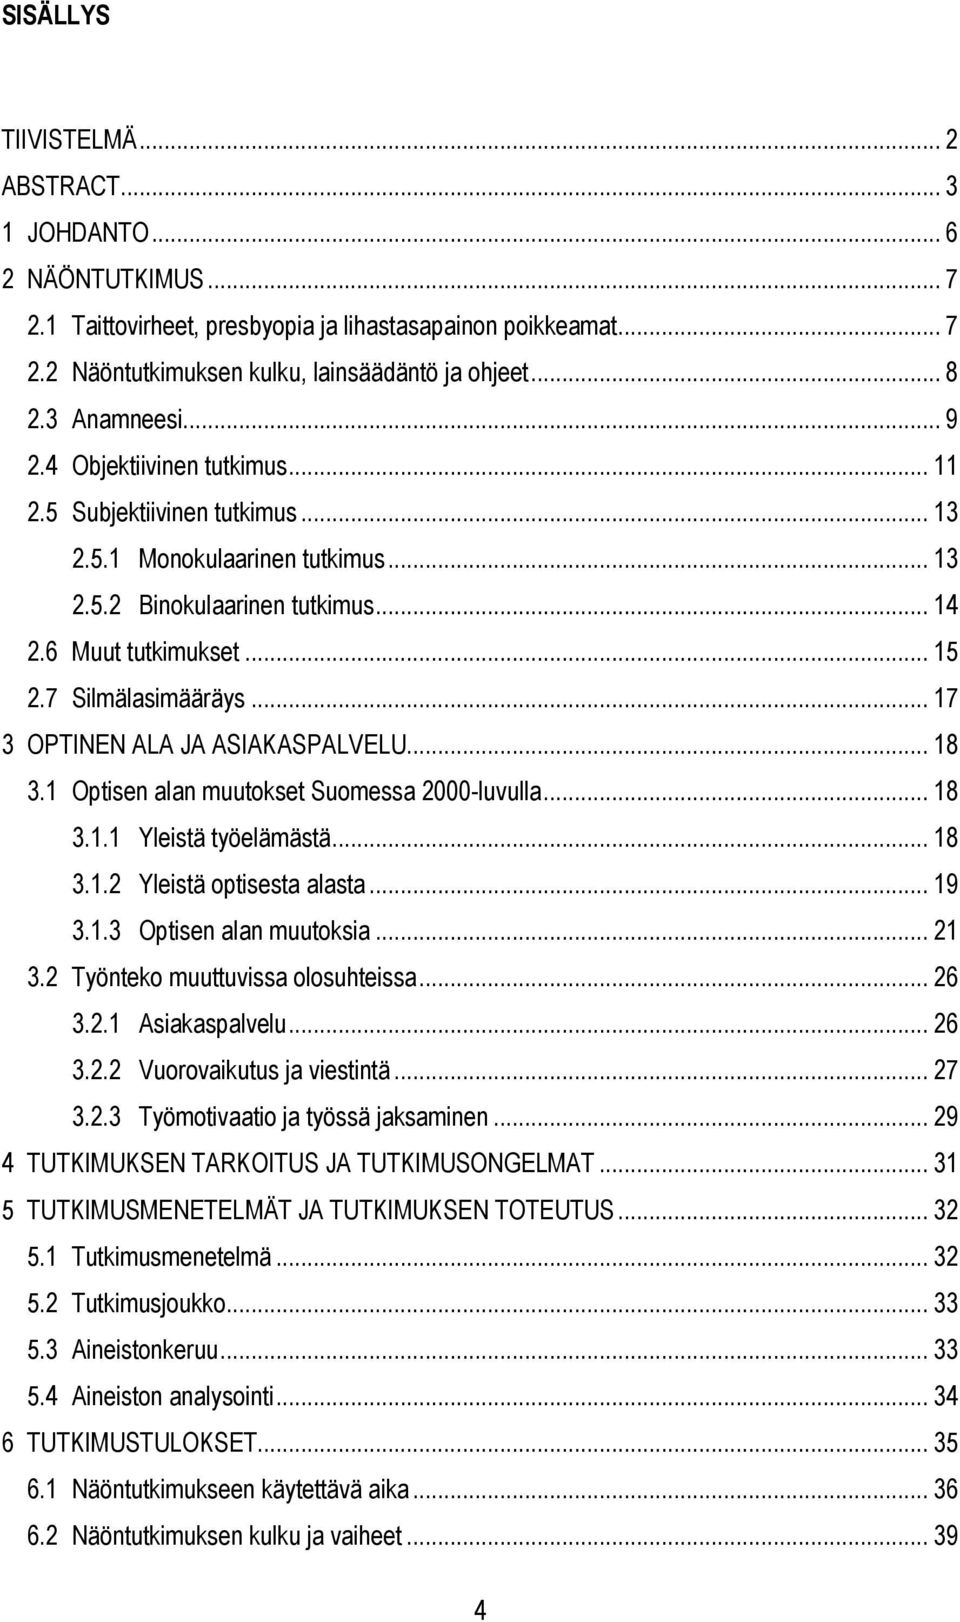 7 Silmälasimääräys... 17 3 OPTINEN ALA JA ASIAKASPALVELU... 18 3.1 Optisen alan muutokset Suomessa 2000-luvulla... 18 3.1.1 Yleistä työelämästä... 18 3.1.2 Yleistä optisesta alasta... 19 3.1.3 Optisen alan muutoksia.